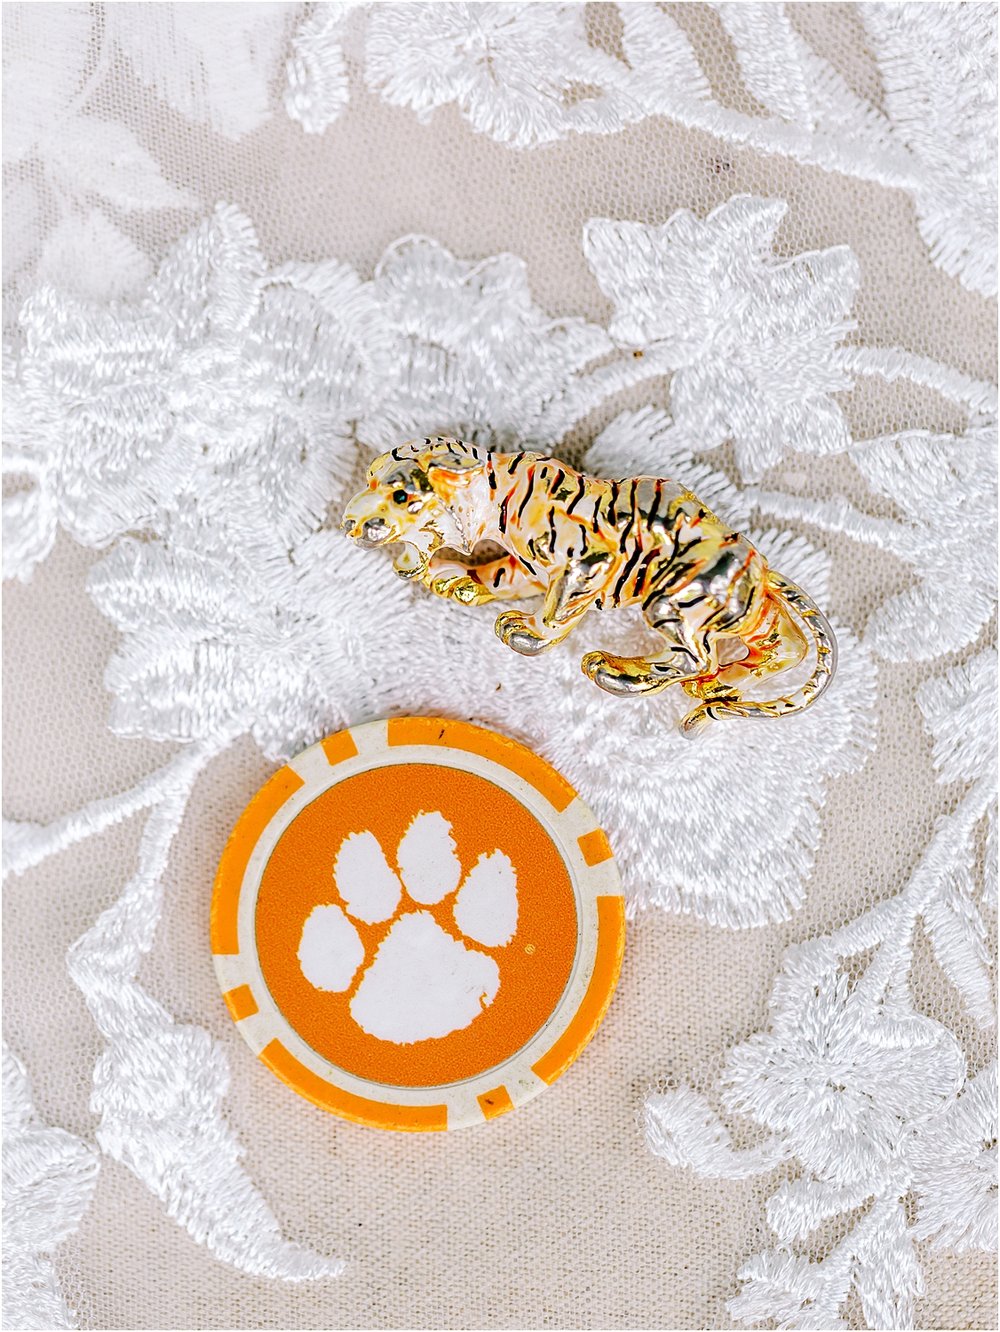 Clemson Tiger wedding accessories 